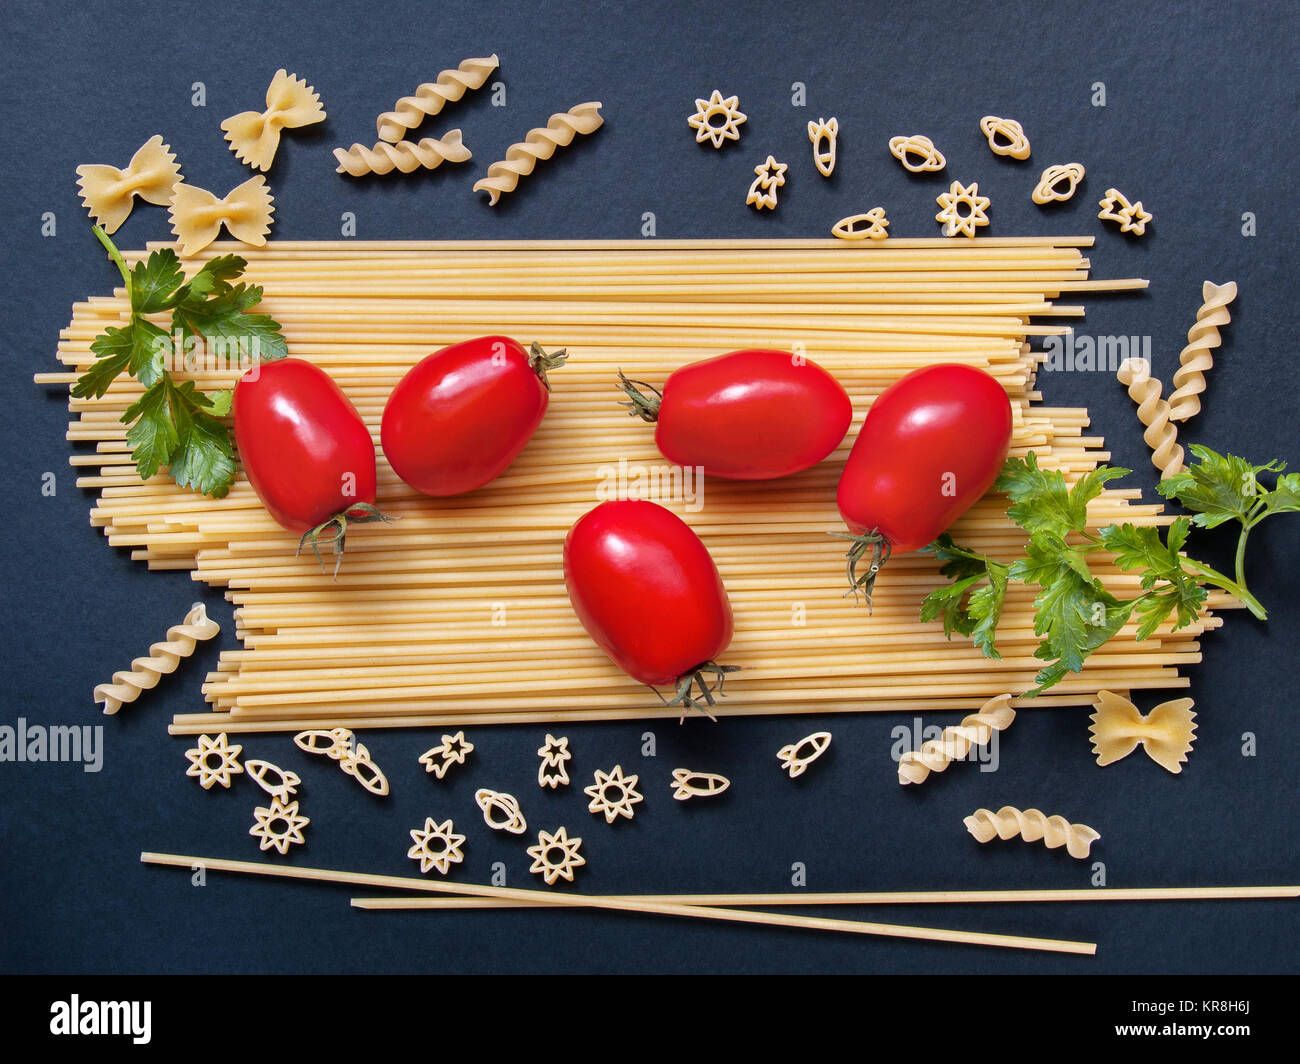 Spaghetti mit Tomaten, Grünen und andere dar, Nudeln in Form von Bögen, Spiralen, Zahlen von Raketen und Sterne für Kochen auf einem dunklen Hintergrund Stockfoto